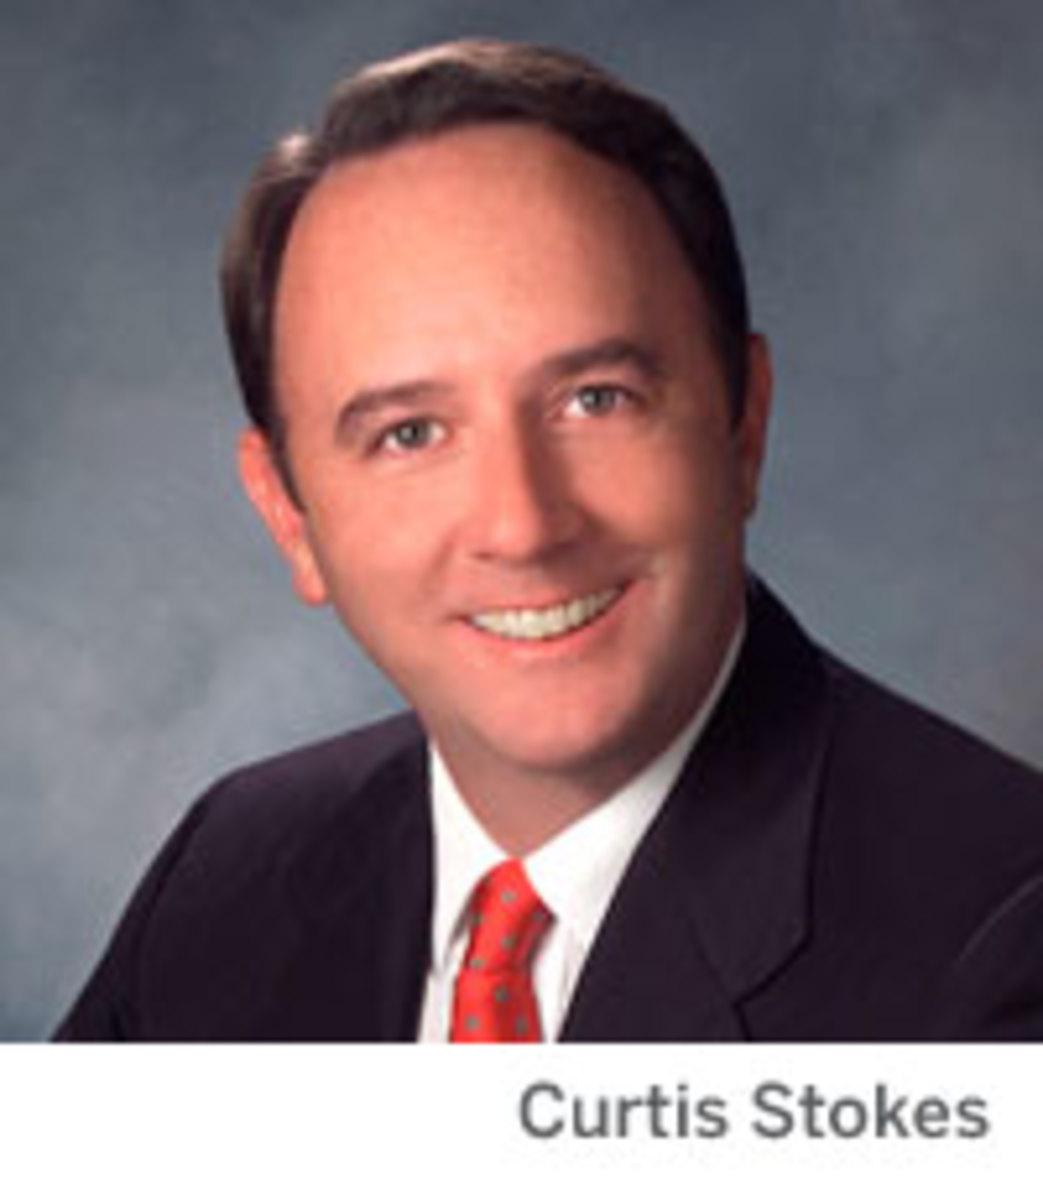 Curtis Stokes